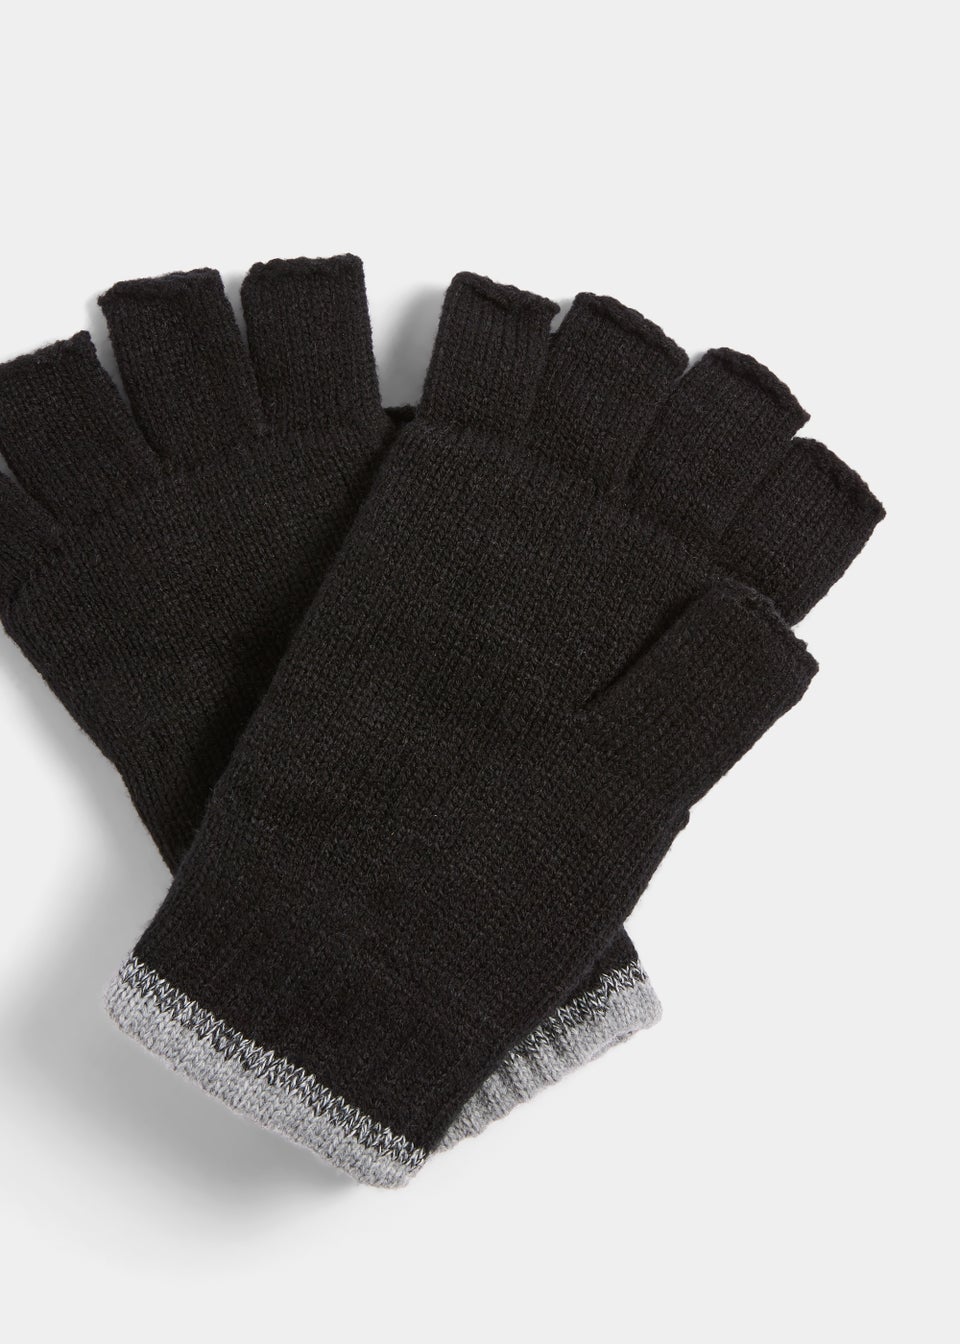 Black Thinsulate Fingerless Gloves